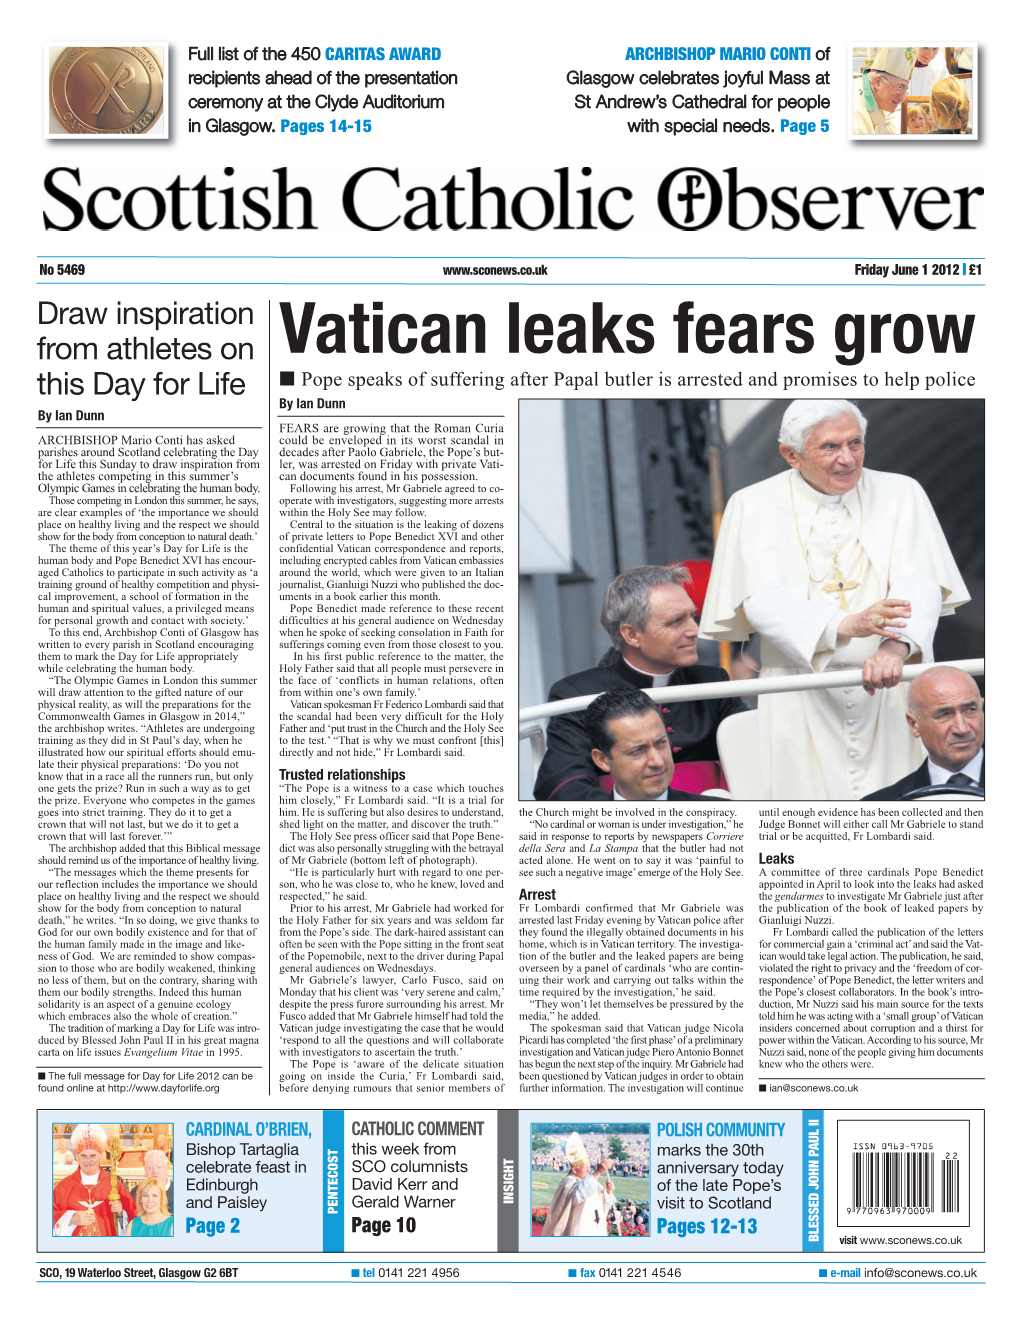 Vatican Leaks Fears Grow